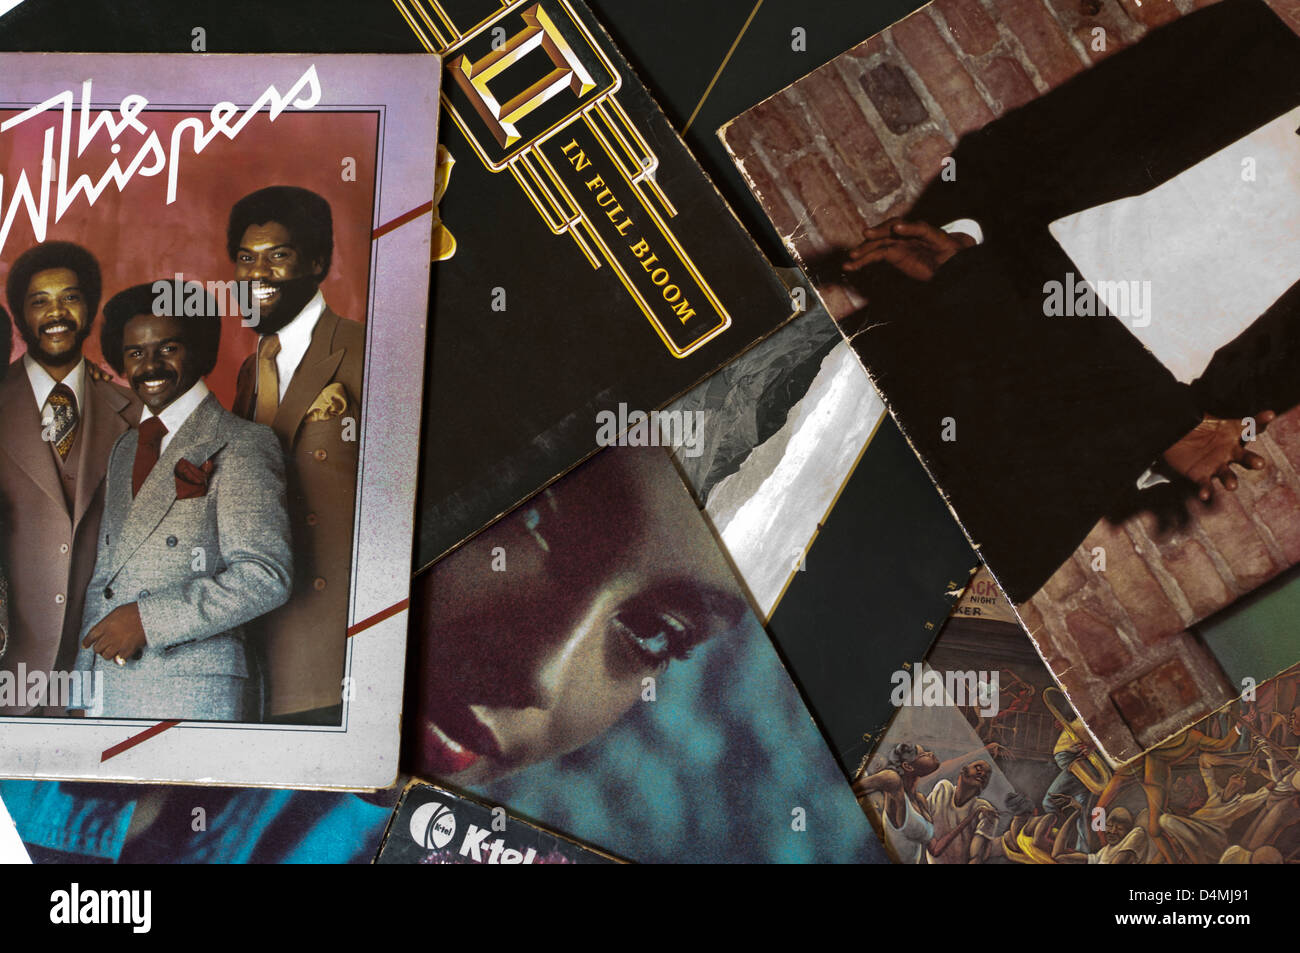 33rpm Vinyl Record Album Sleeves Stock Photo